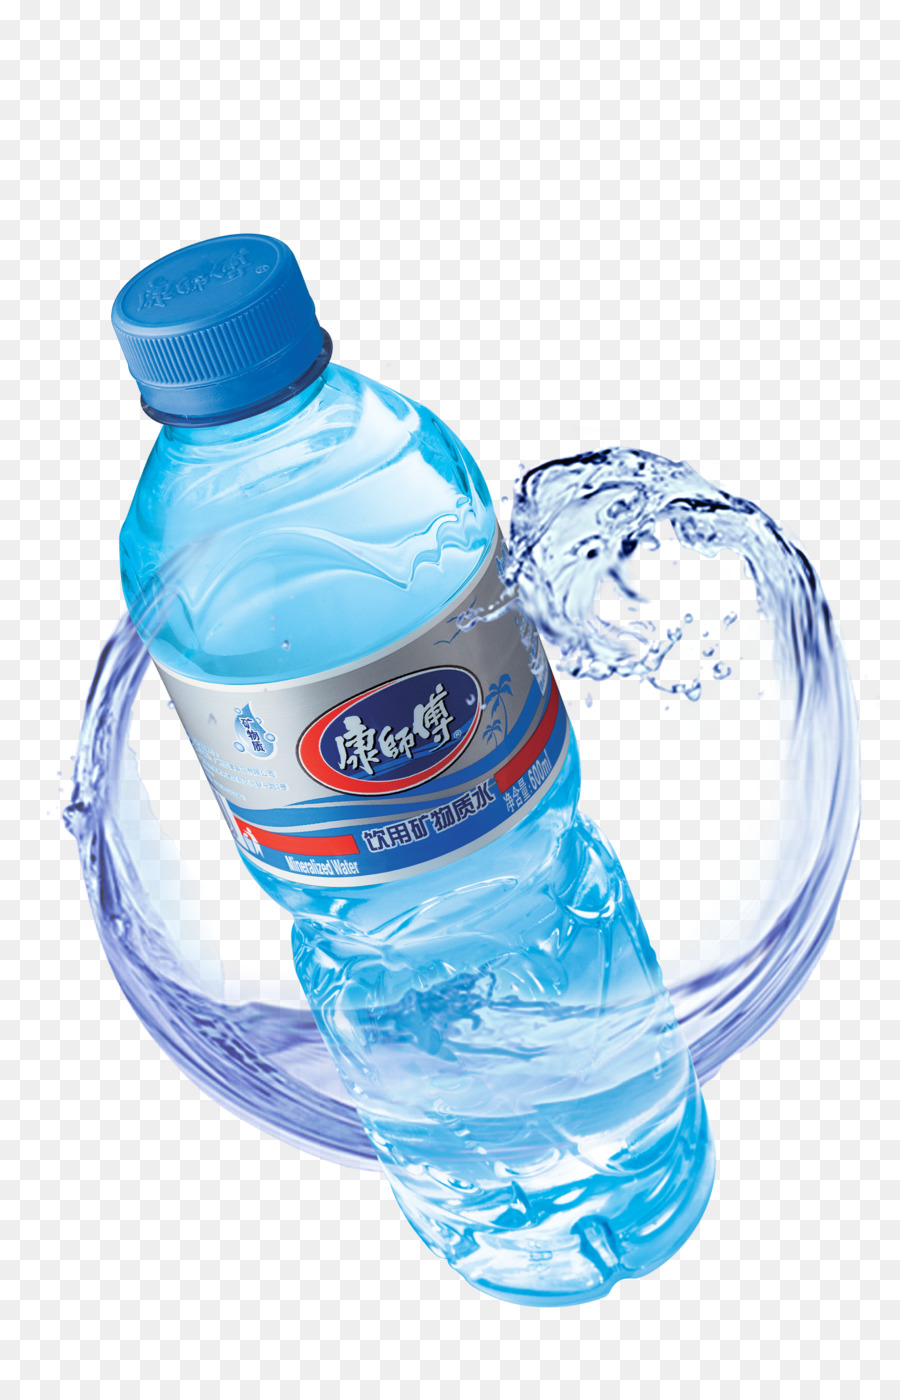 Acqua minerale in Bottiglia acqua - blu, acqua minerale